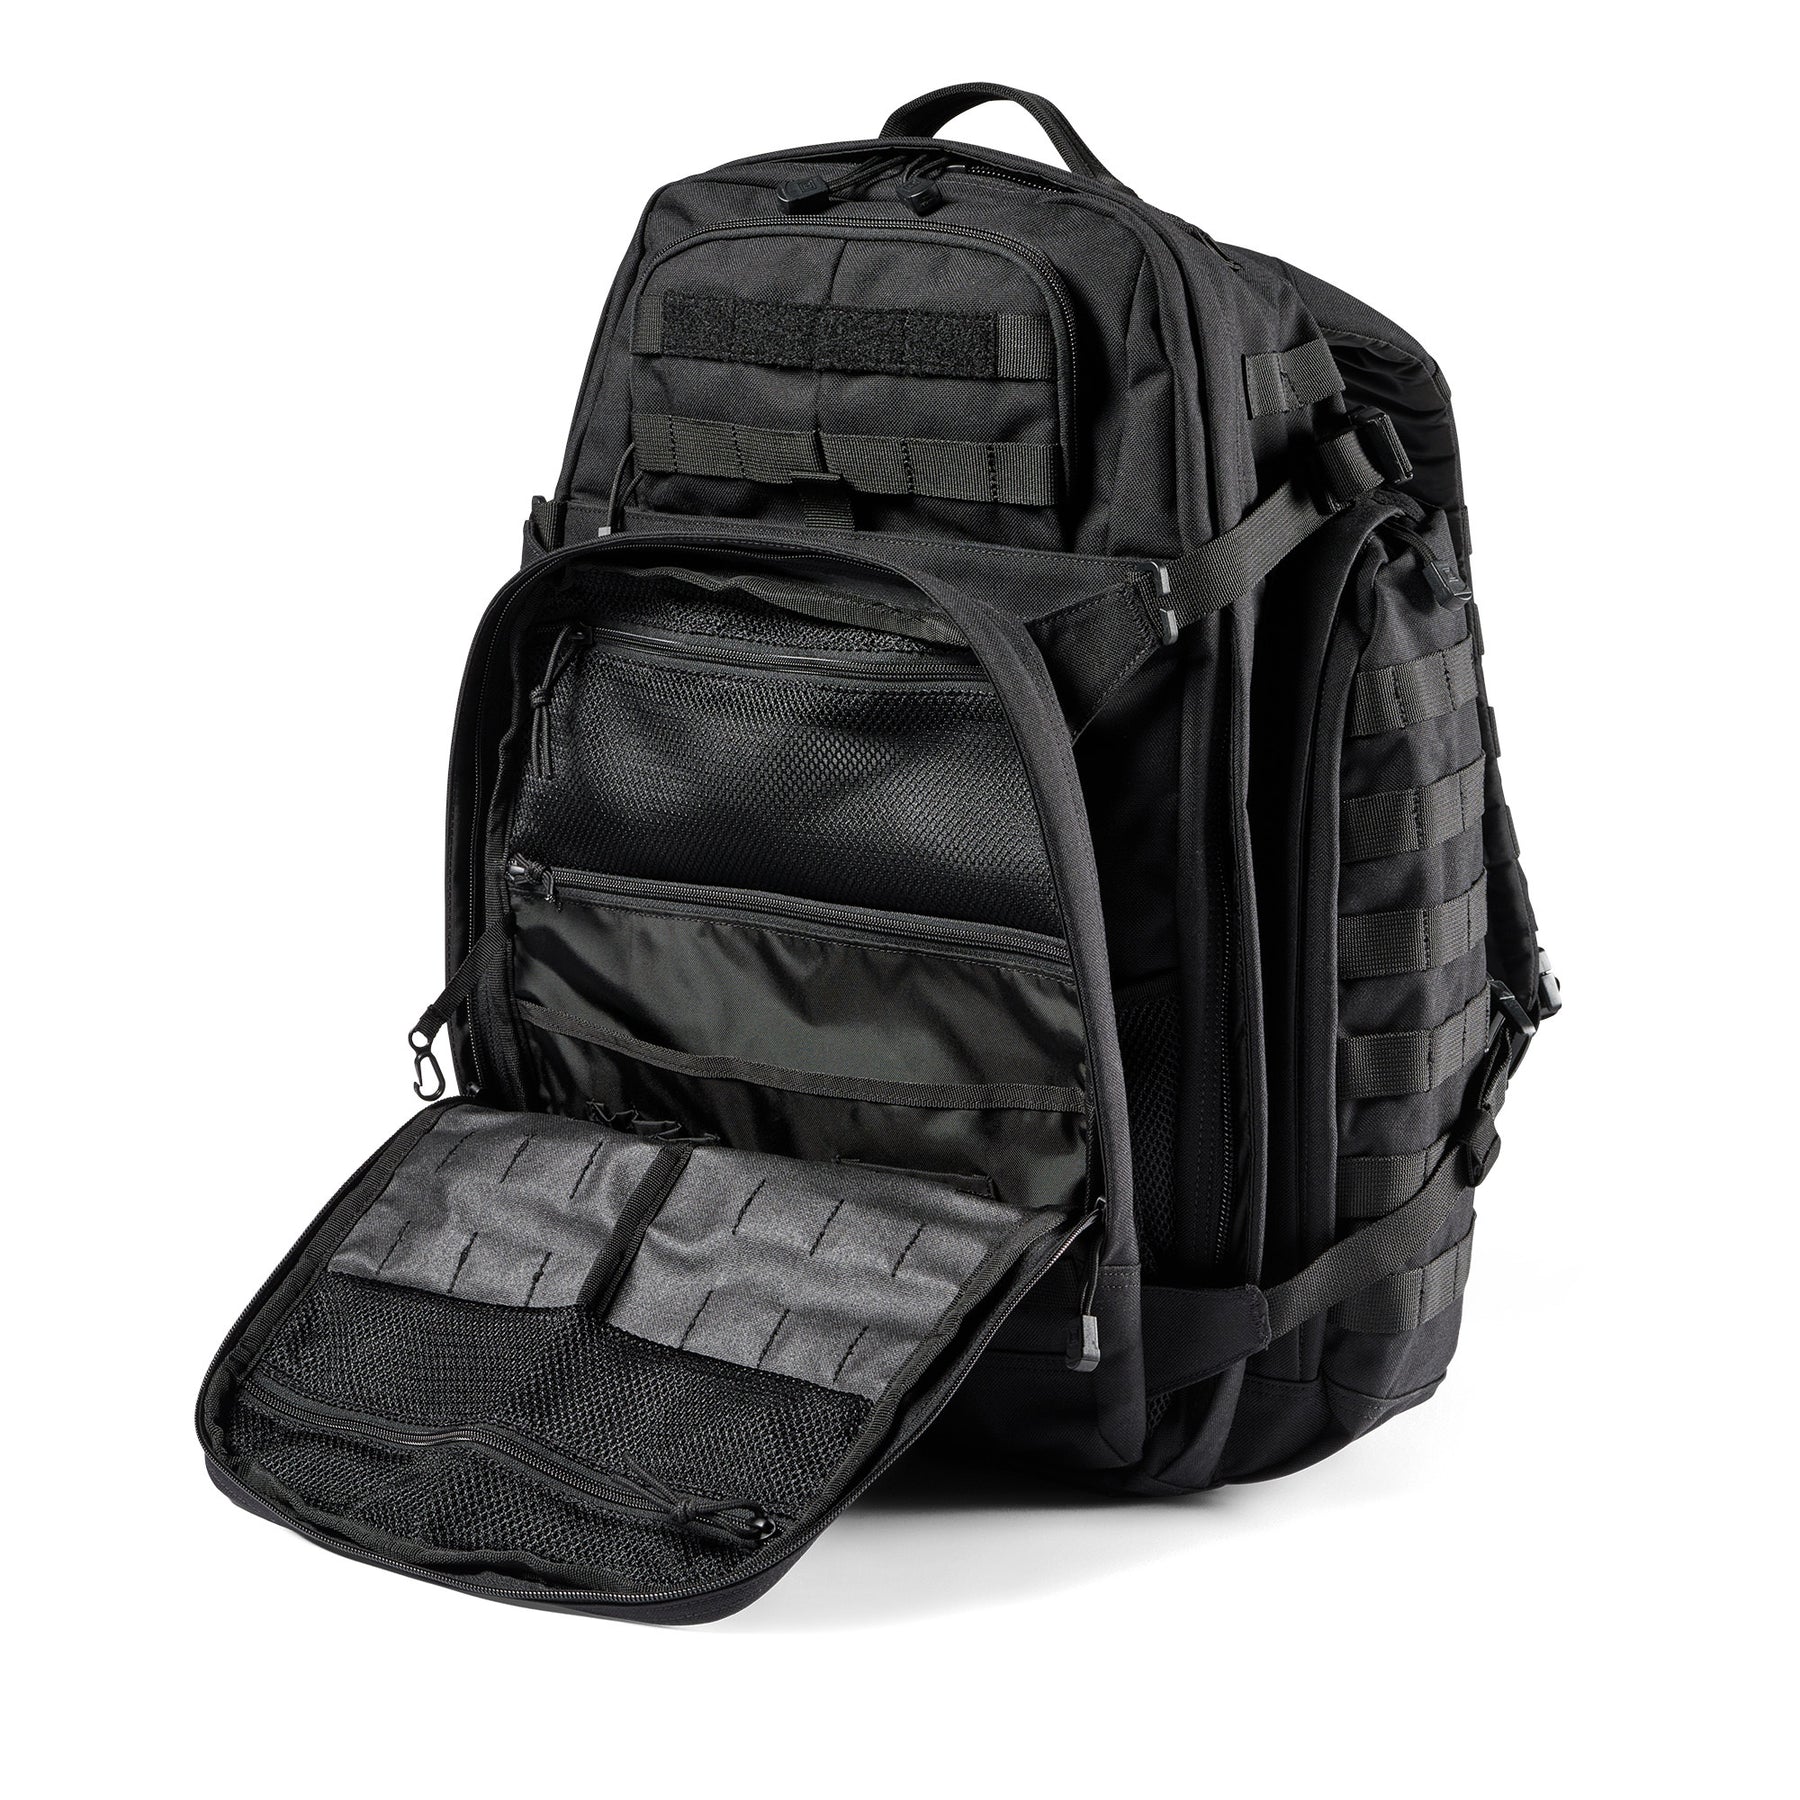 Zaino RUSH72 2.0 di 5.11 Tactical Black (nero) - vista tasca anteriore admin